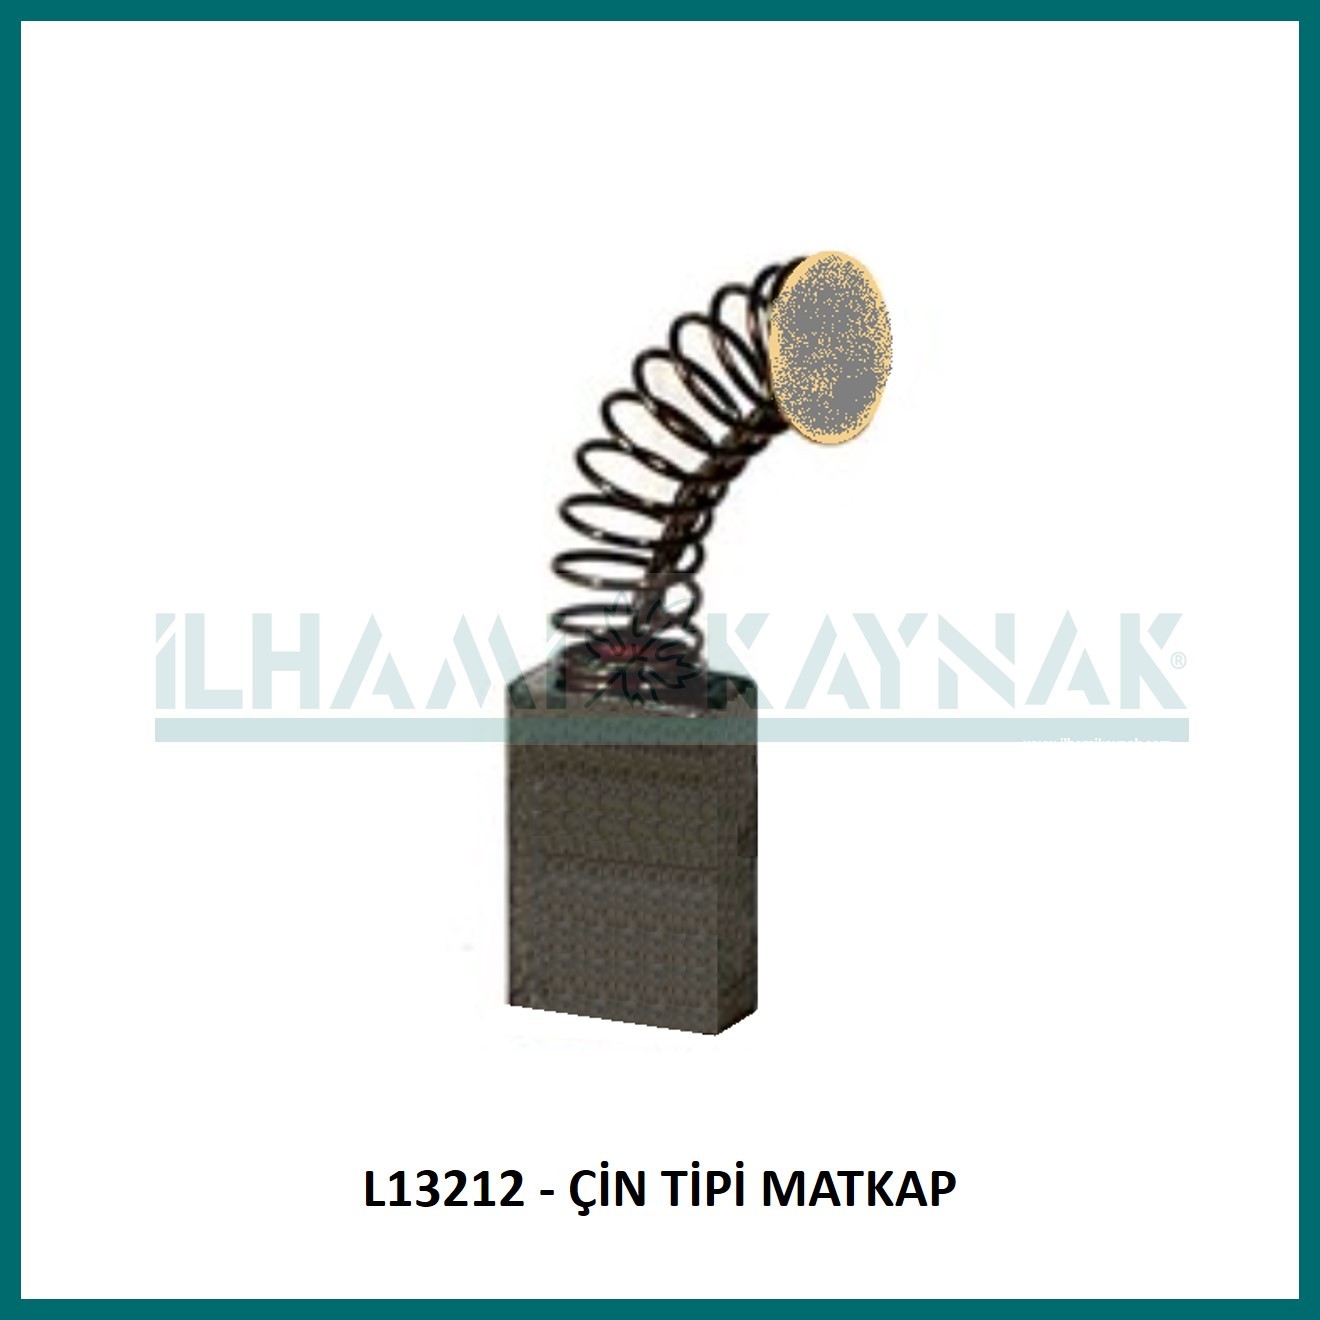 L13212 - ÇİN TİPİ MATKAP , DWT - 7*11*18 mm - Minimum Satın Alım: 10 Adet